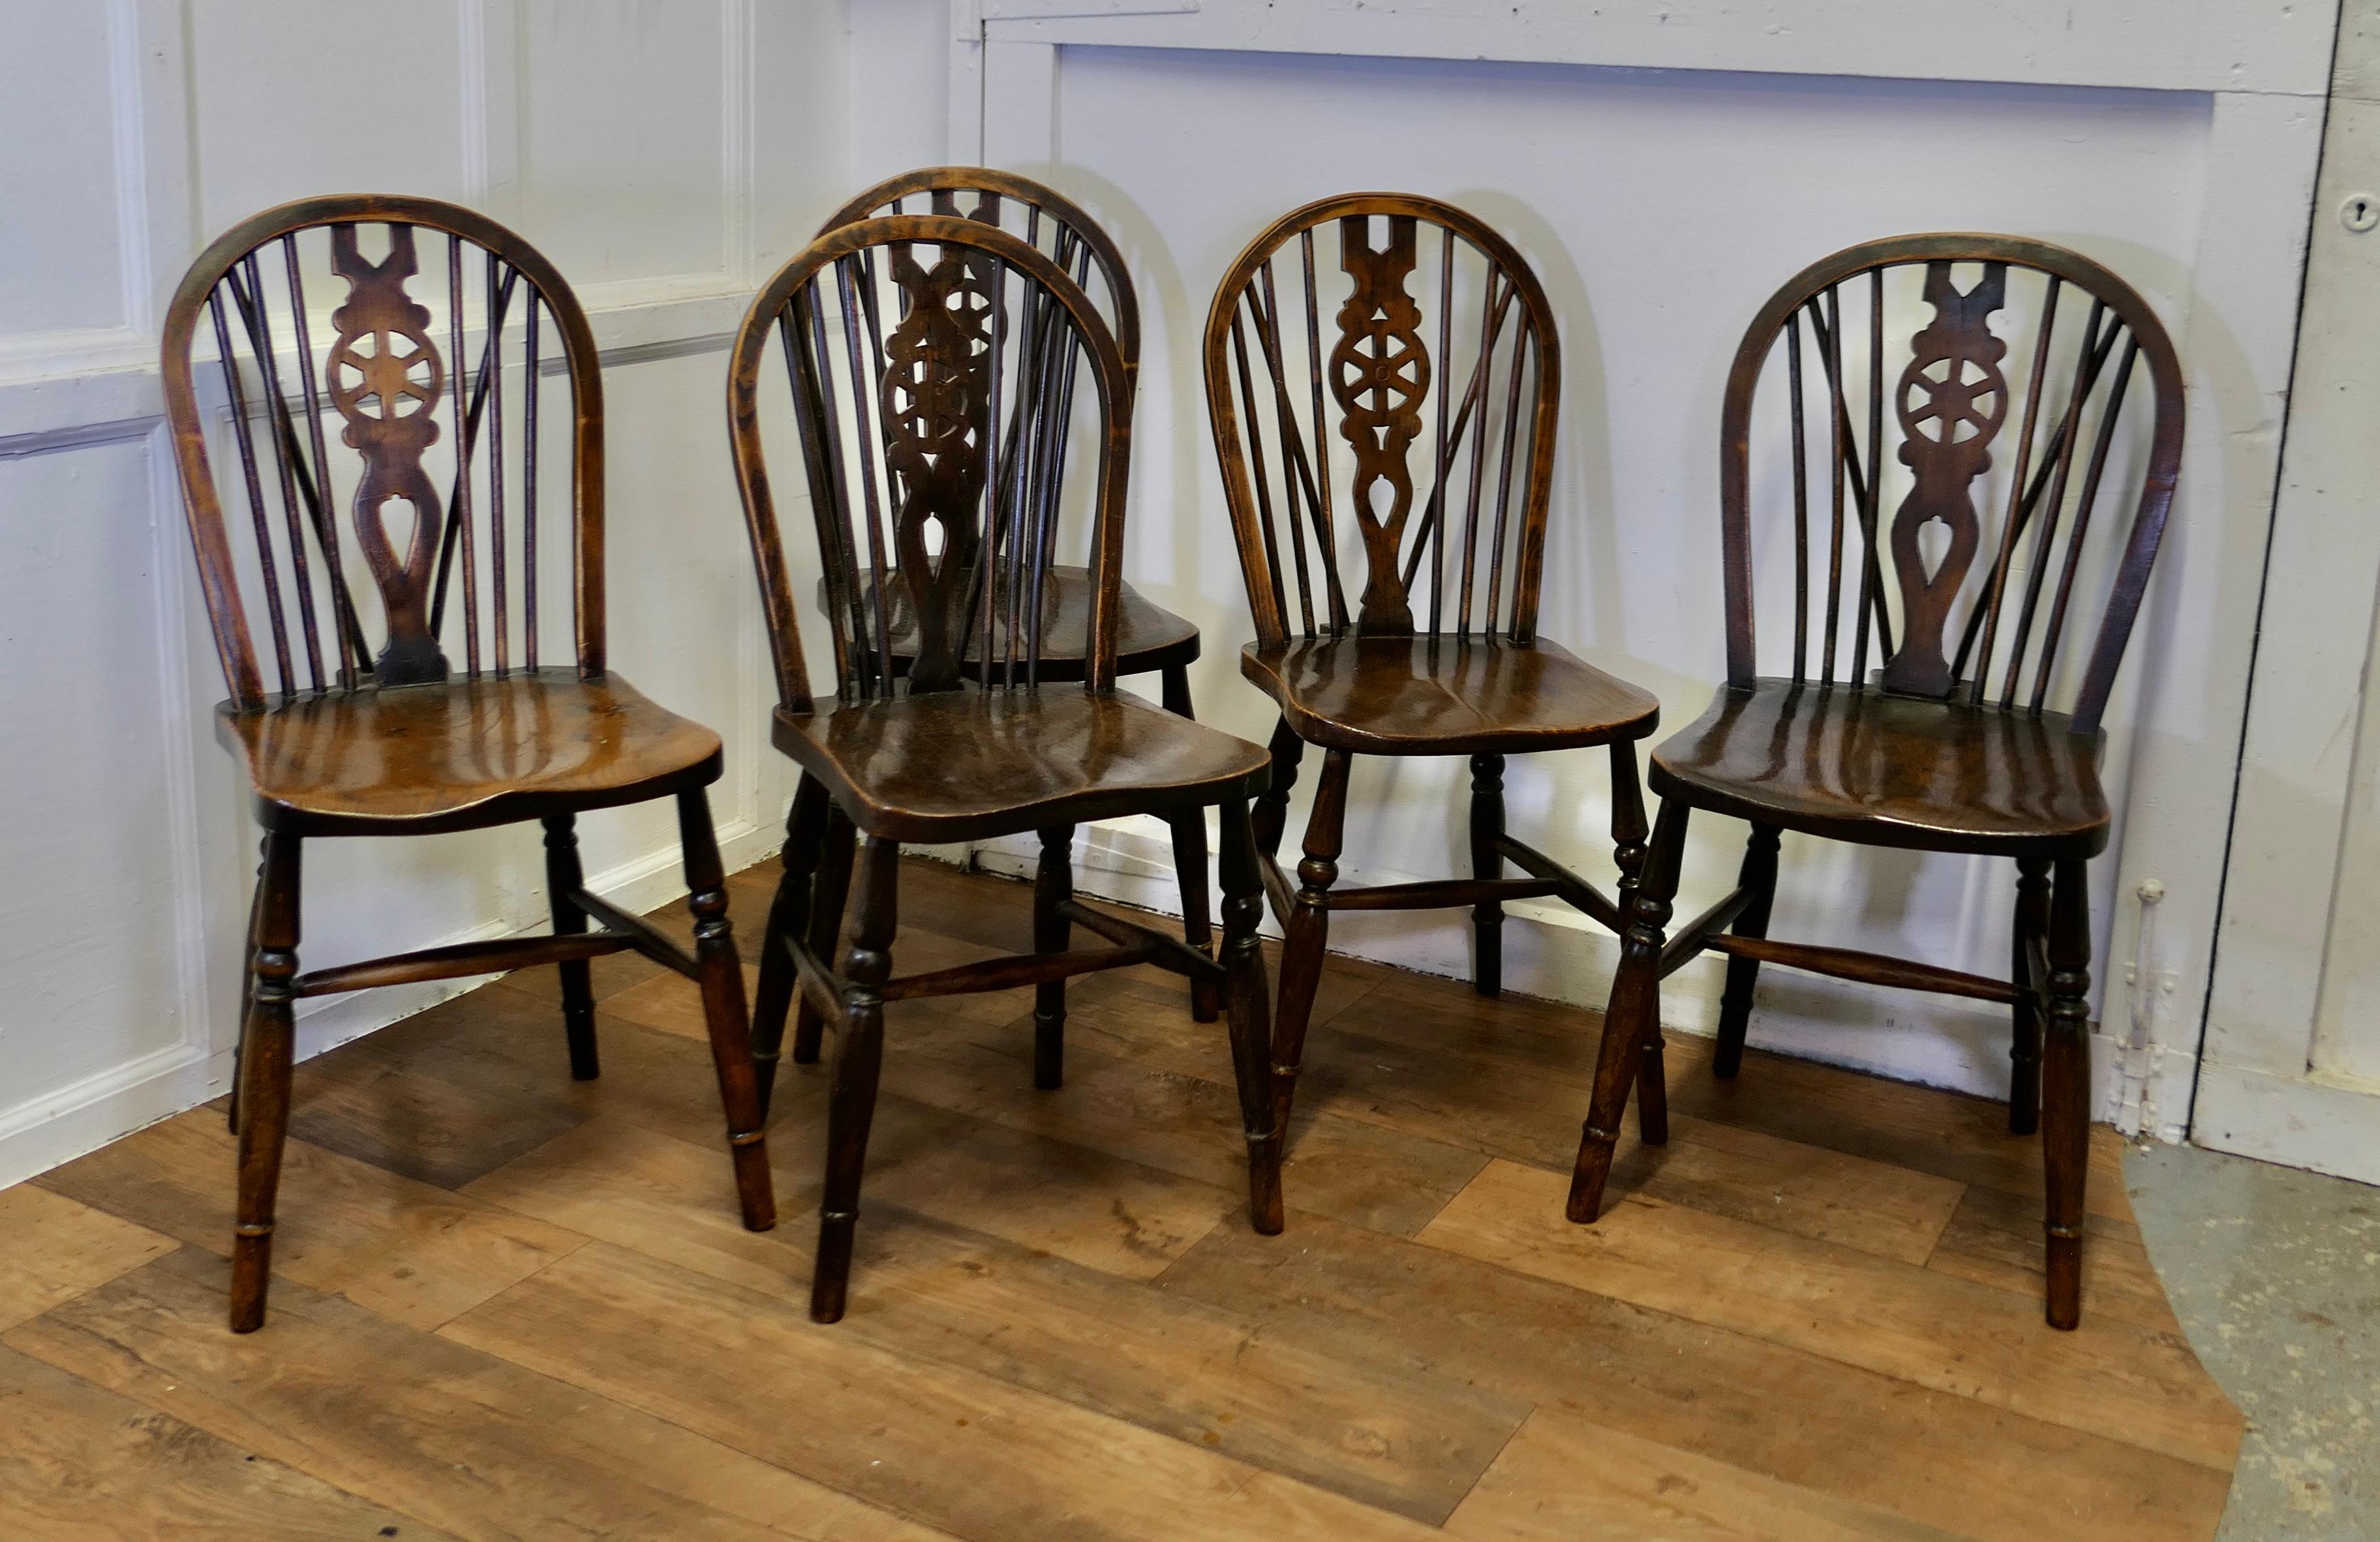 Ensemble de 5 chaises de cuisine Windsor à dossier roulant en hêtre et orme de l'époque victorienne

Les chaises sont de conception classique et traditionnellement fabriquées en bois massif. Elles ont un dossier en arceau avec une cale dans le style